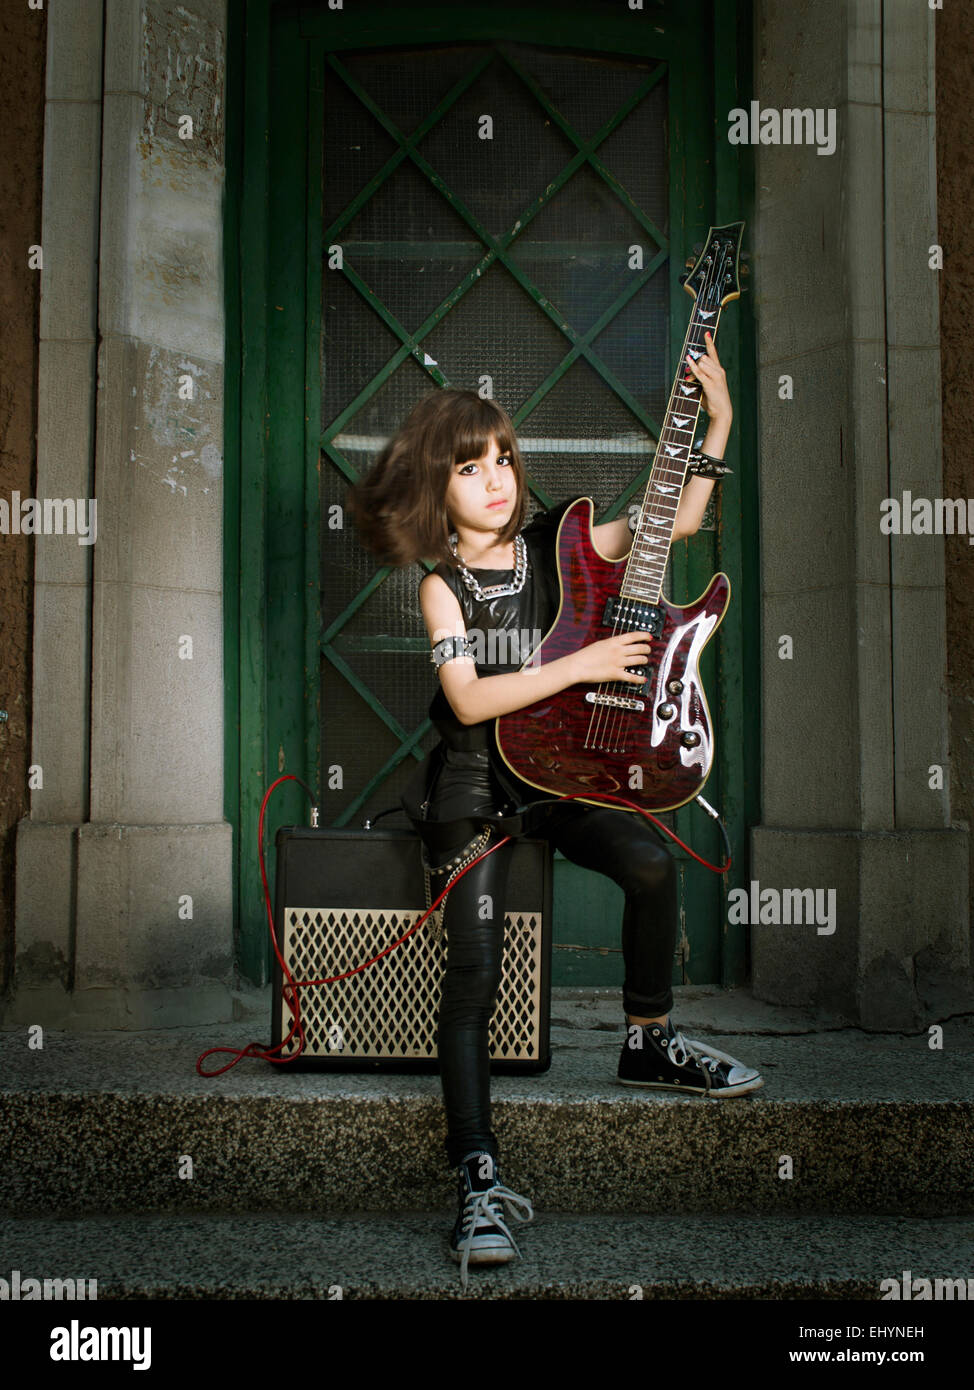 Ragazza vestita come una rock star a suonare la chitarra Foto Stock